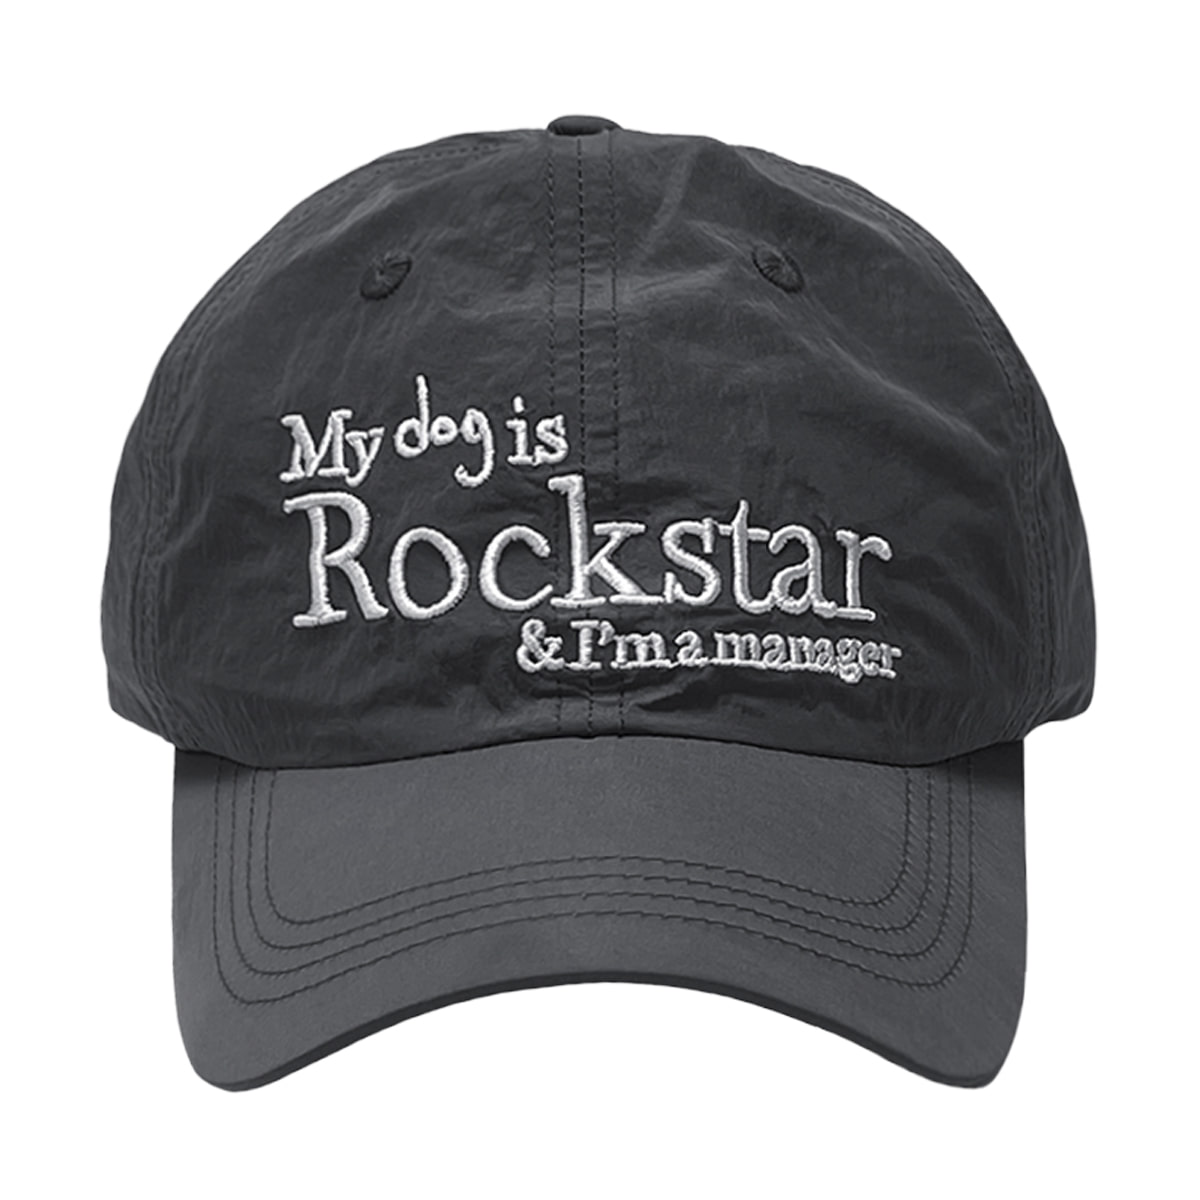 Rockstar dog cap (Charcoal)